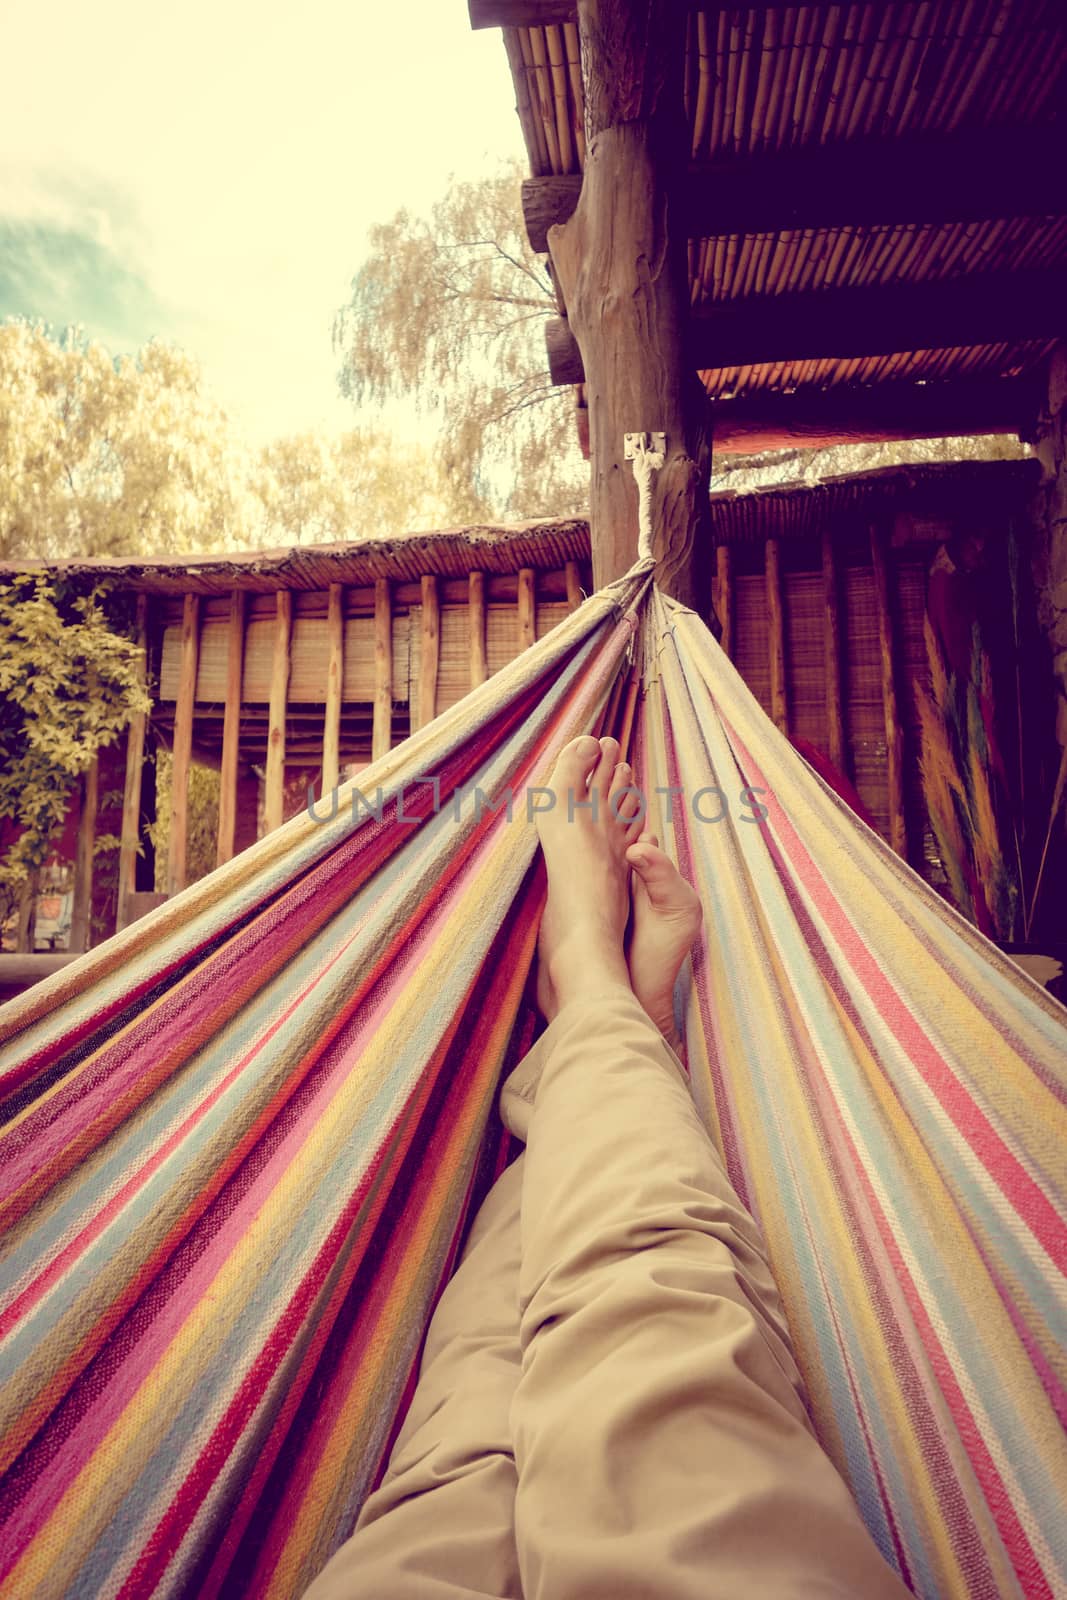 Relaxing in hammock by daboost